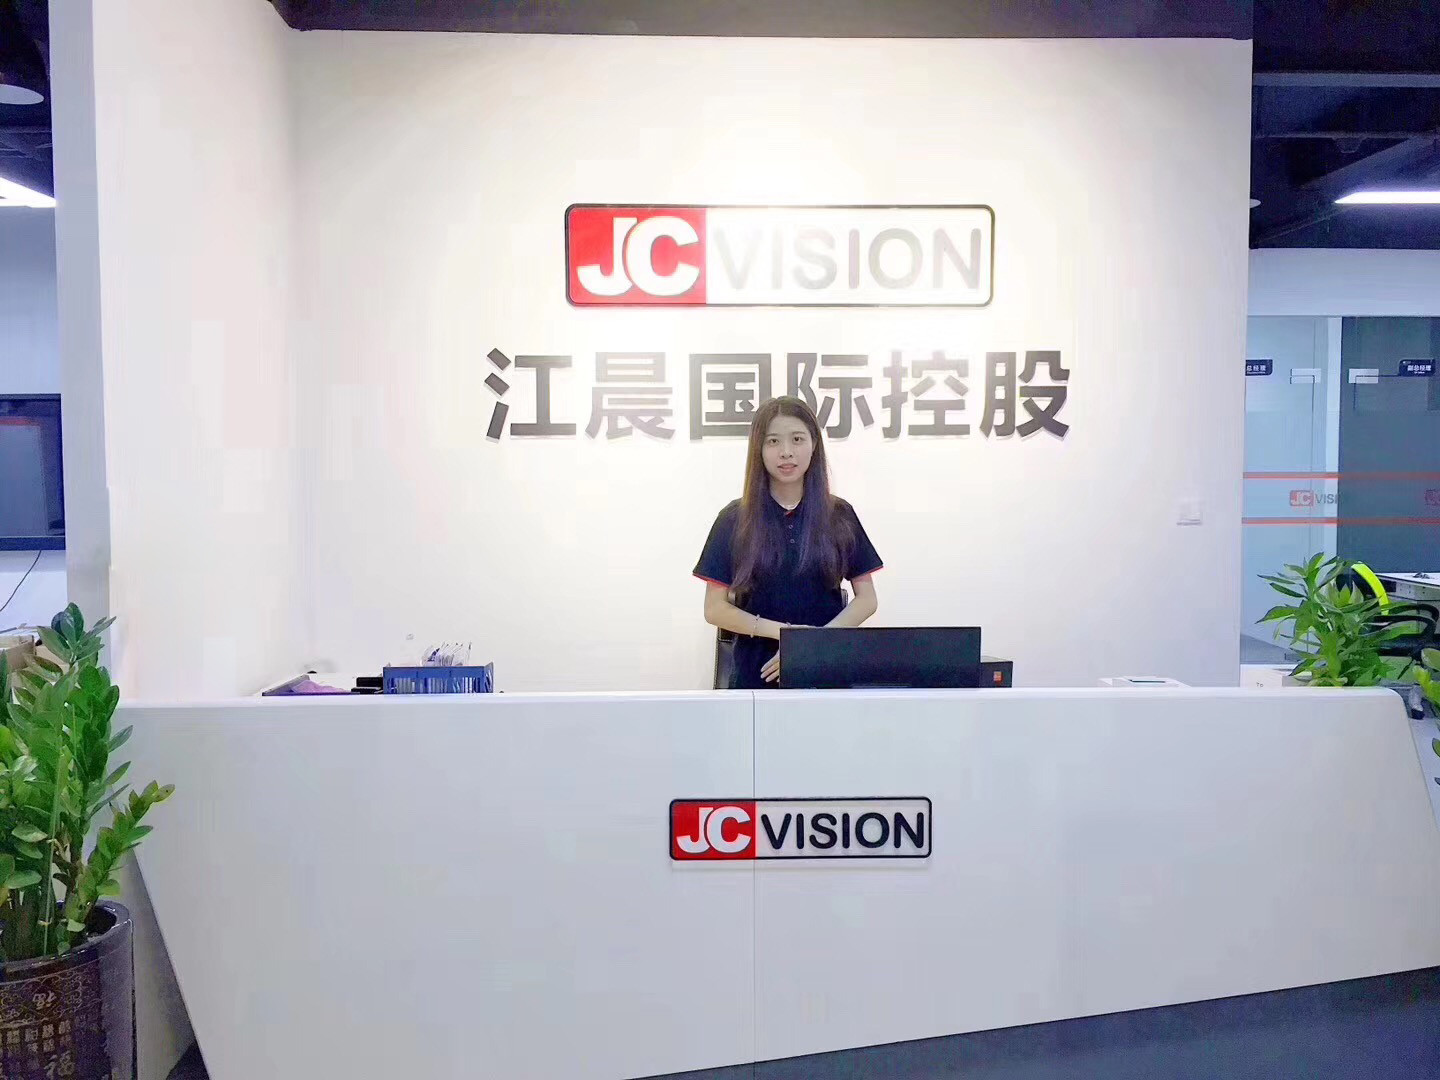 Porcelana Shenzhen Junction Interactive Technology Co., Ltd. Perfil de la compañía